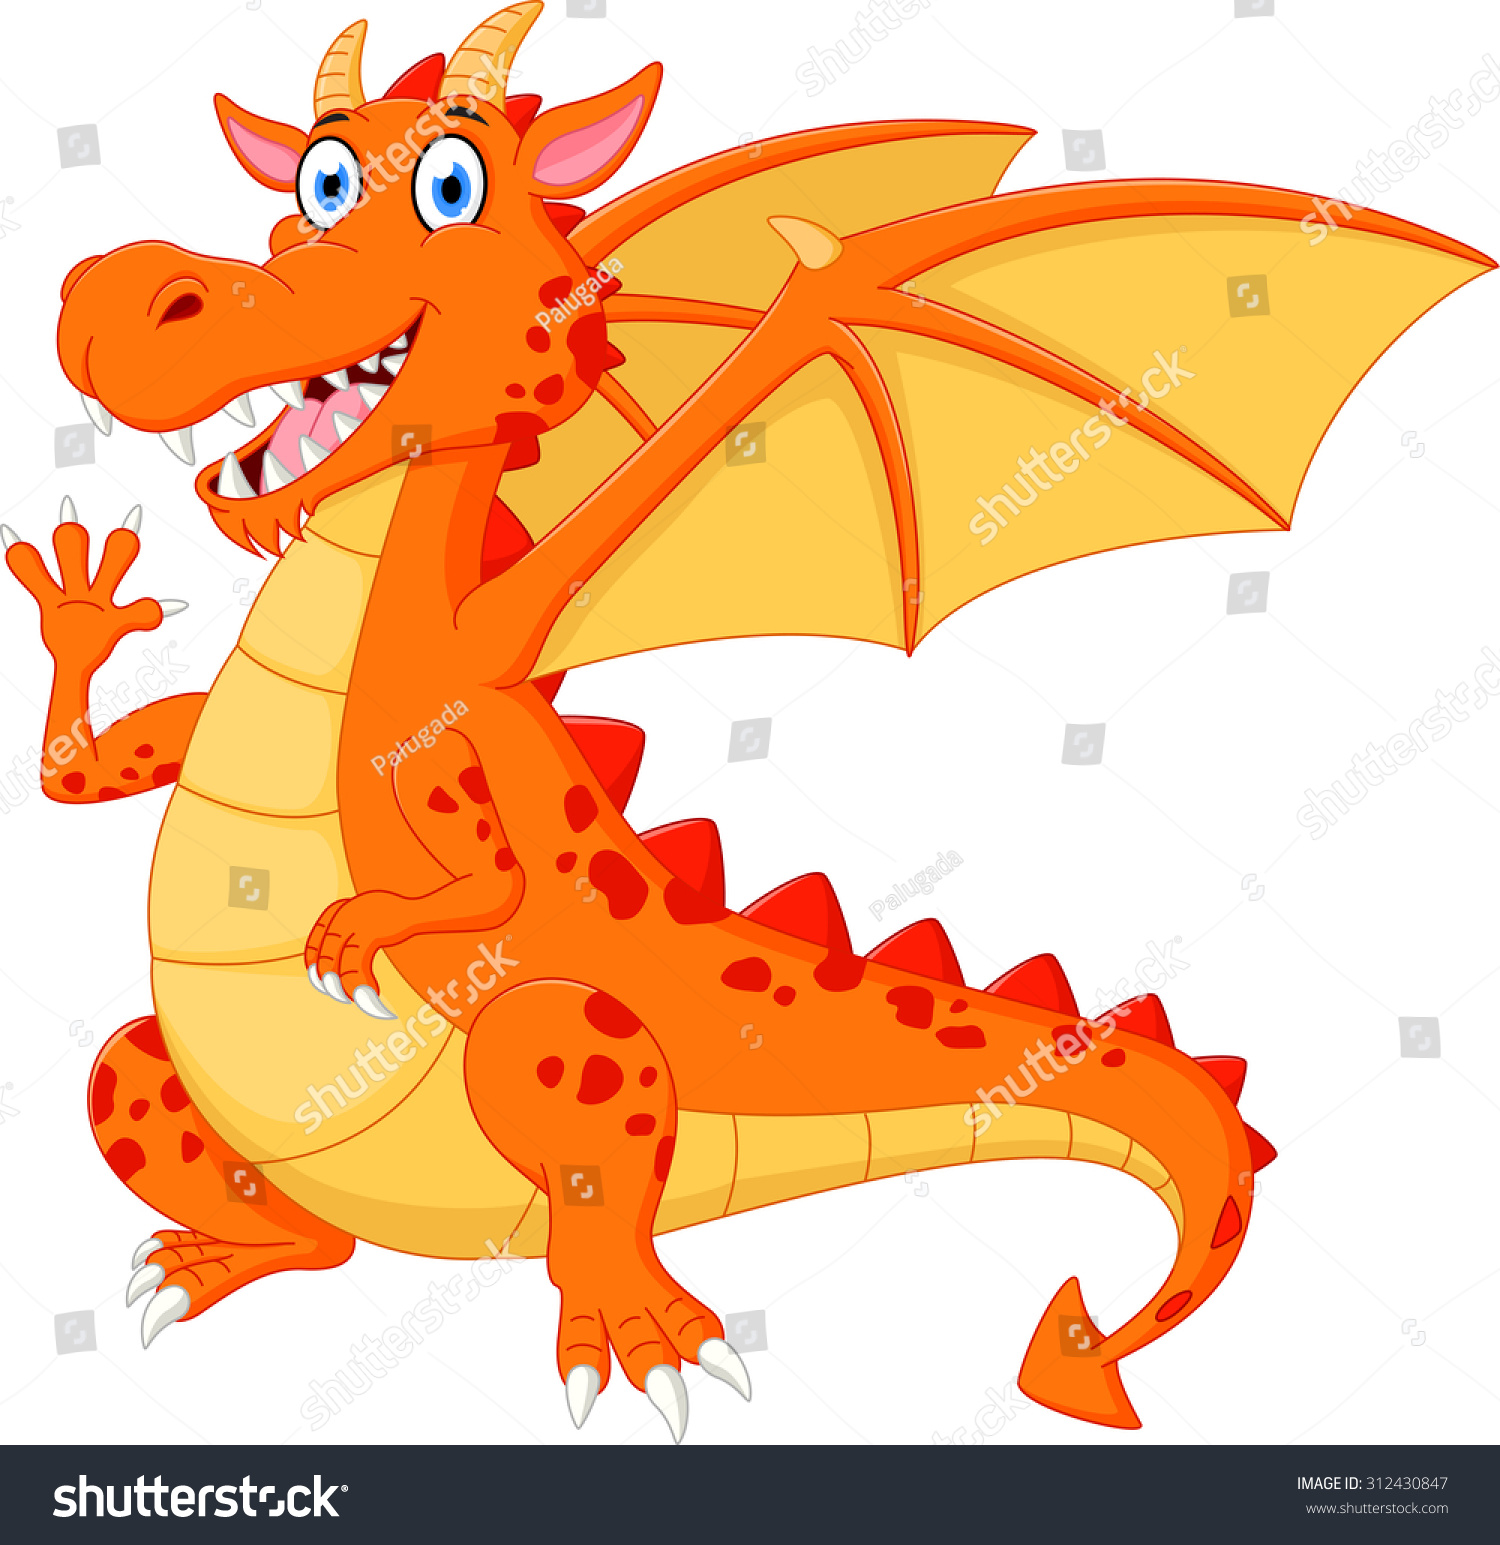 stock-photo-happy-dragon-cartoon-waving-